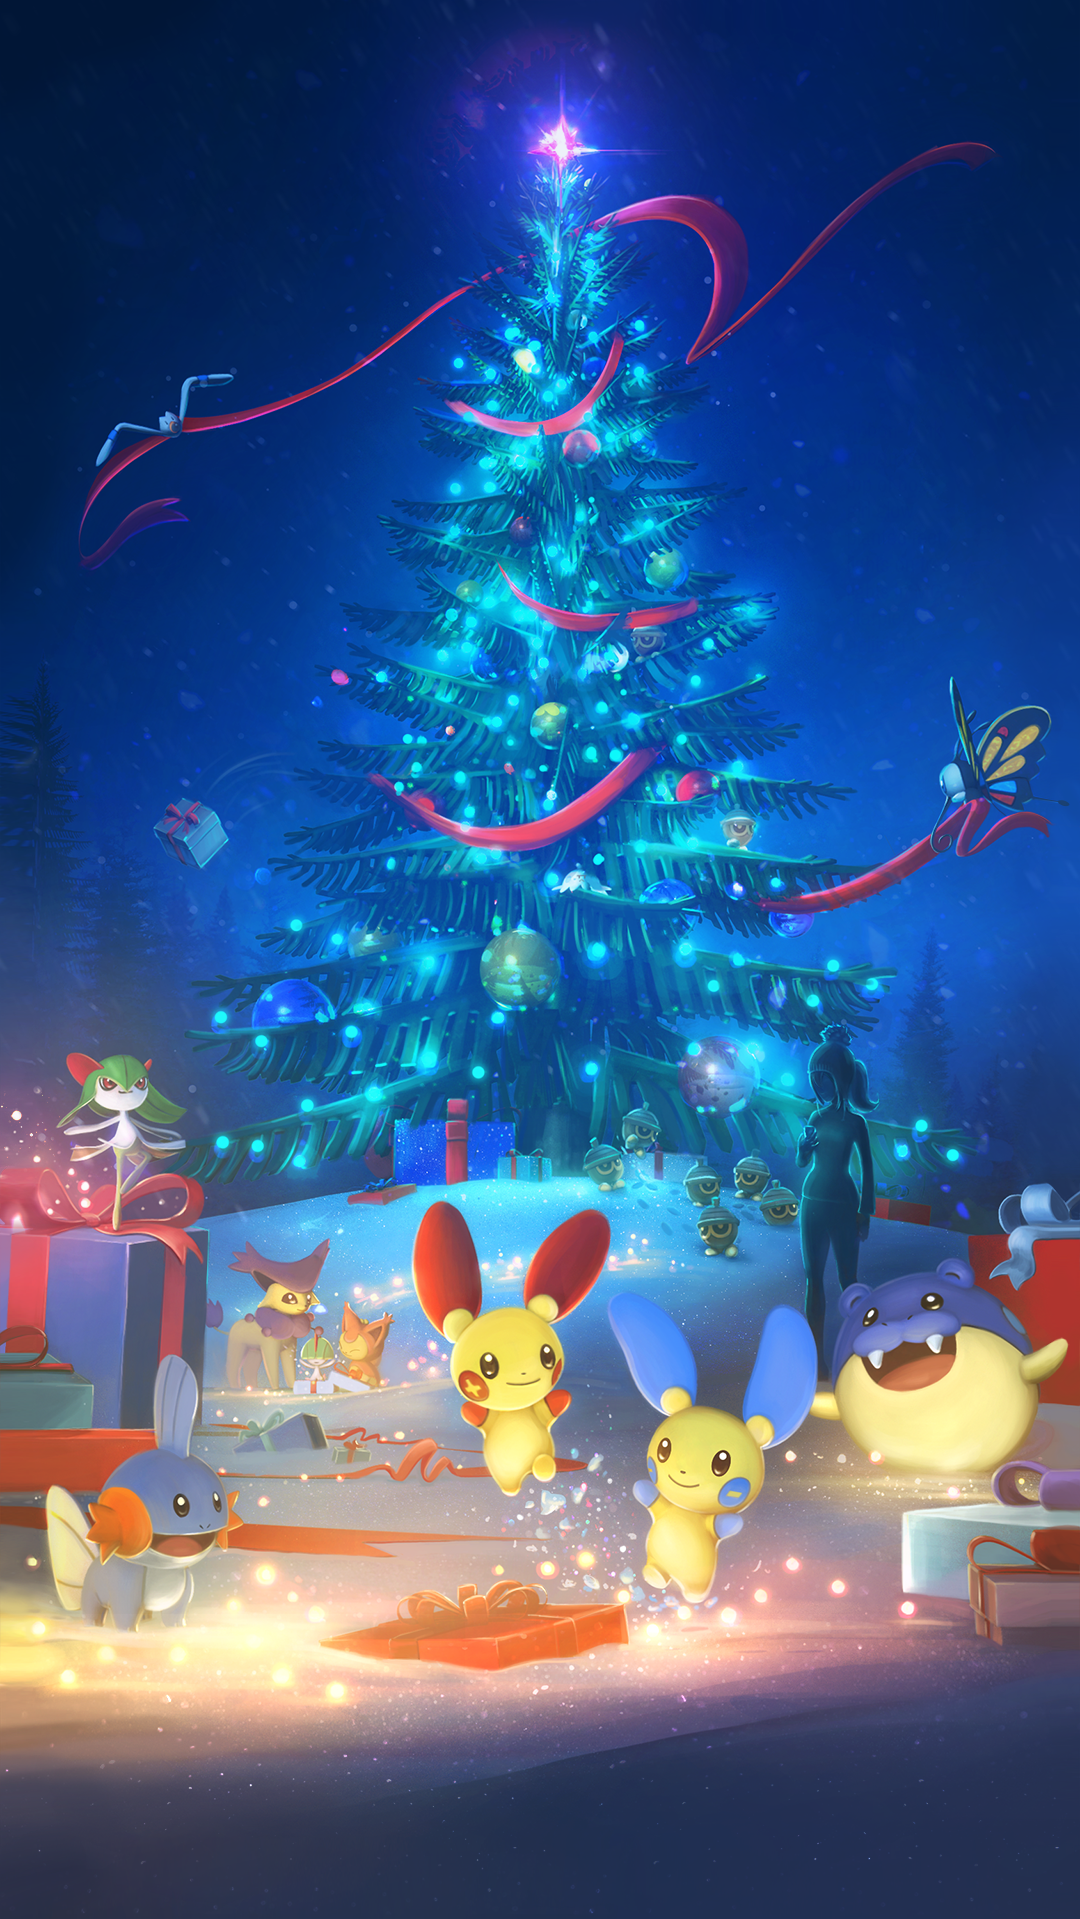 Pokémon GO BR on X: Nova temporada = Nova tela de carregamento